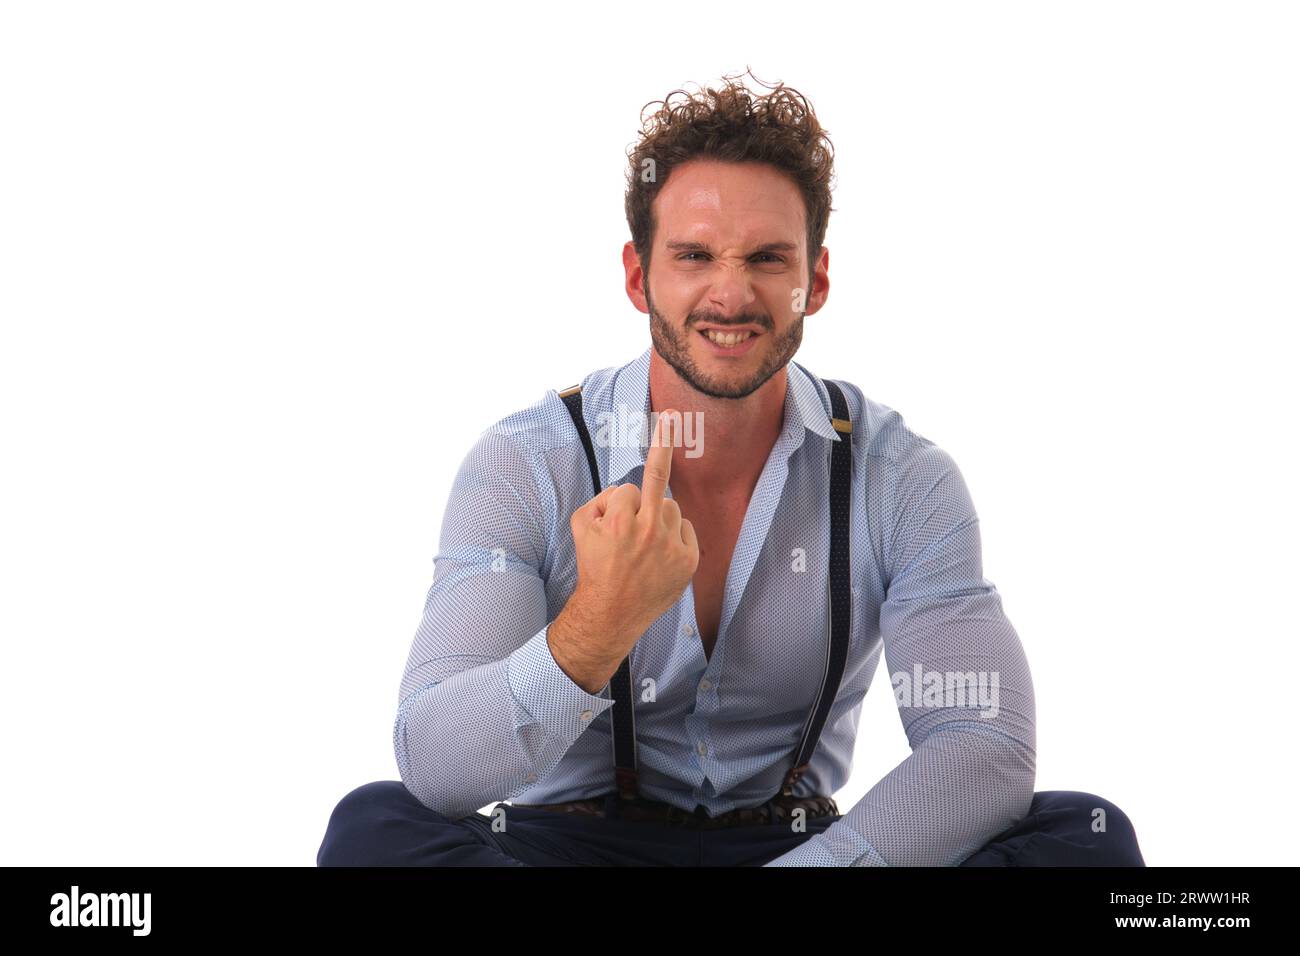 Ein erwachsener Mann mit Bart gibt ein unhöfliches Handzeichen und lächelt. Weißer Hintergrund, Studioeinstellung. Stockfoto